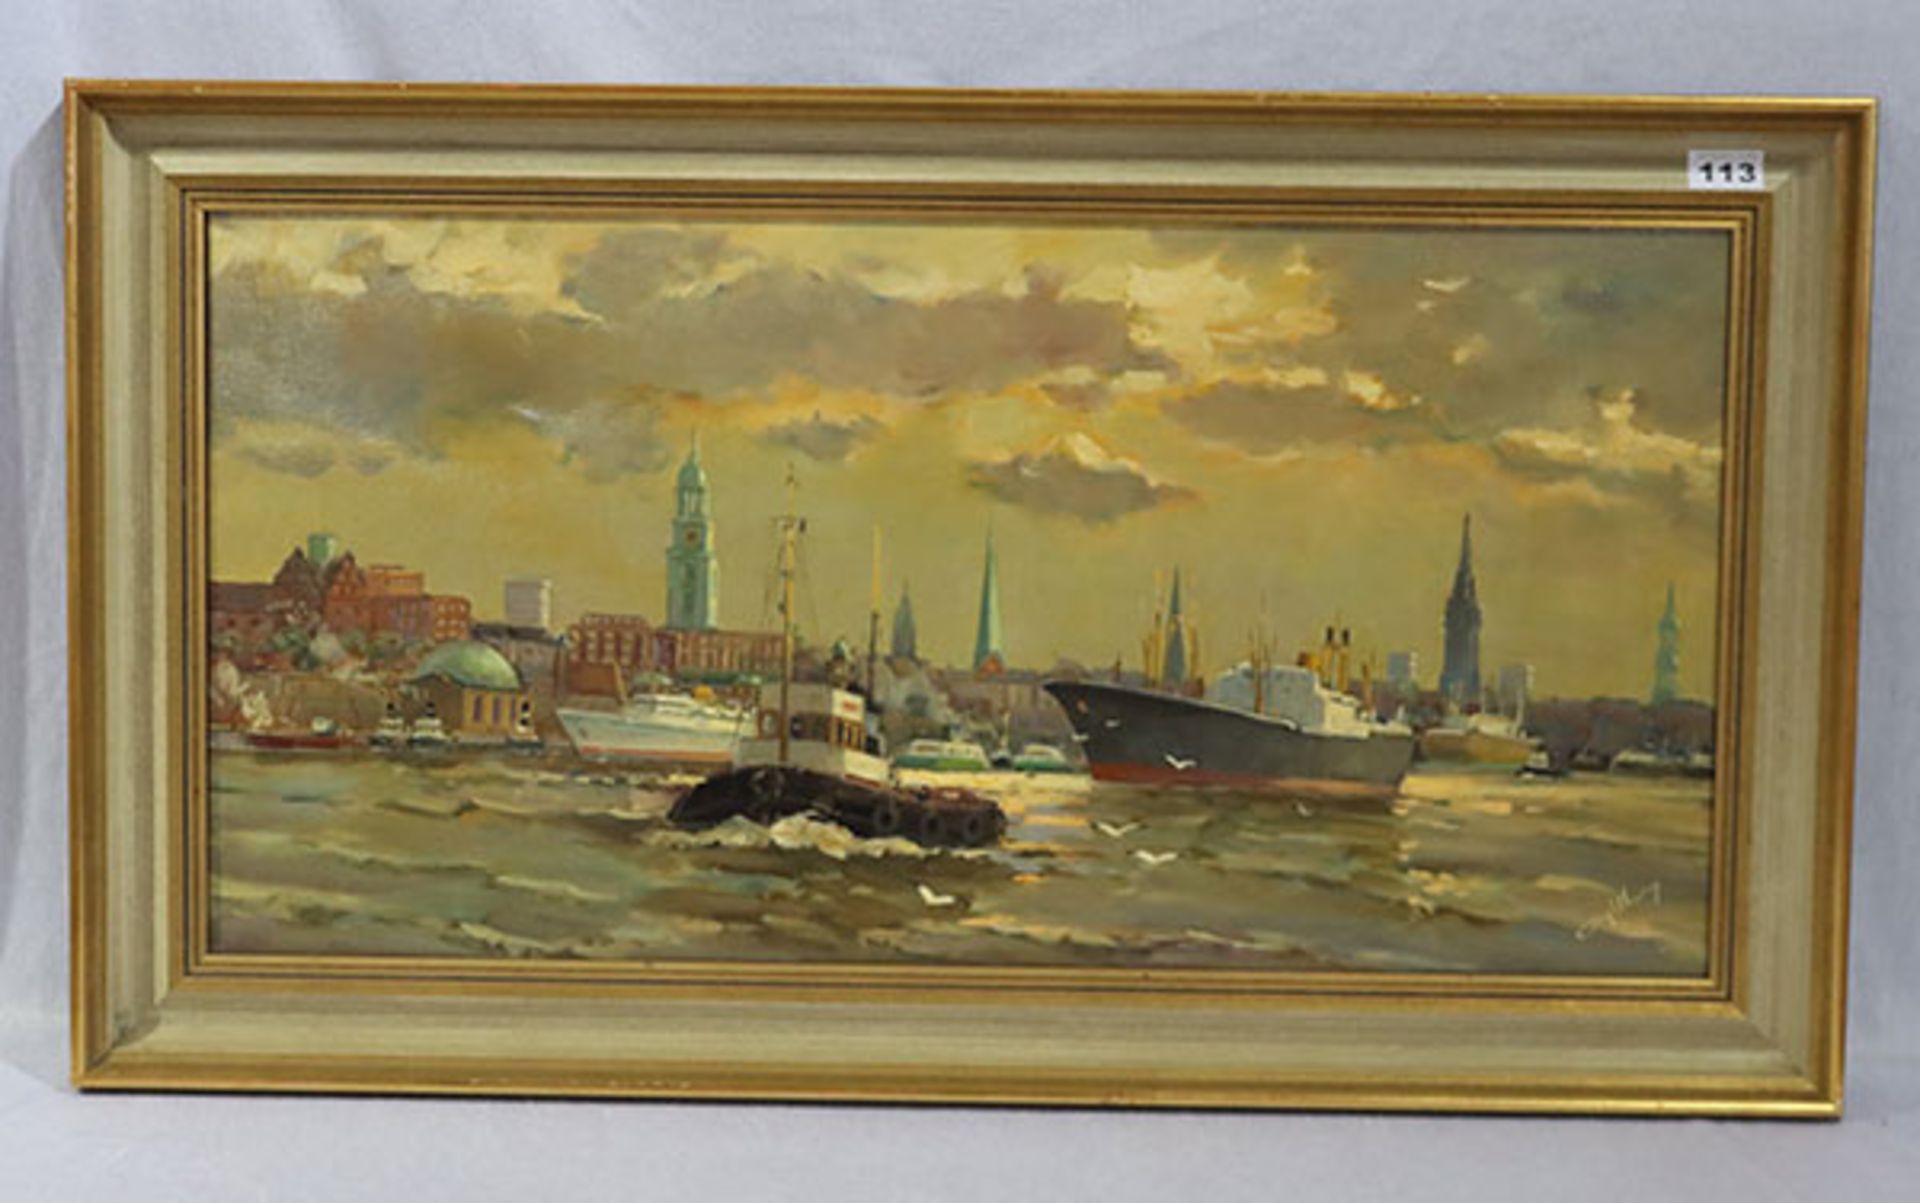 Gemälde ÖL/LW 'Hamburger Hafen-Szenerie', undeutlich signiert, gerahmt, Rahmen bestossen, incl.